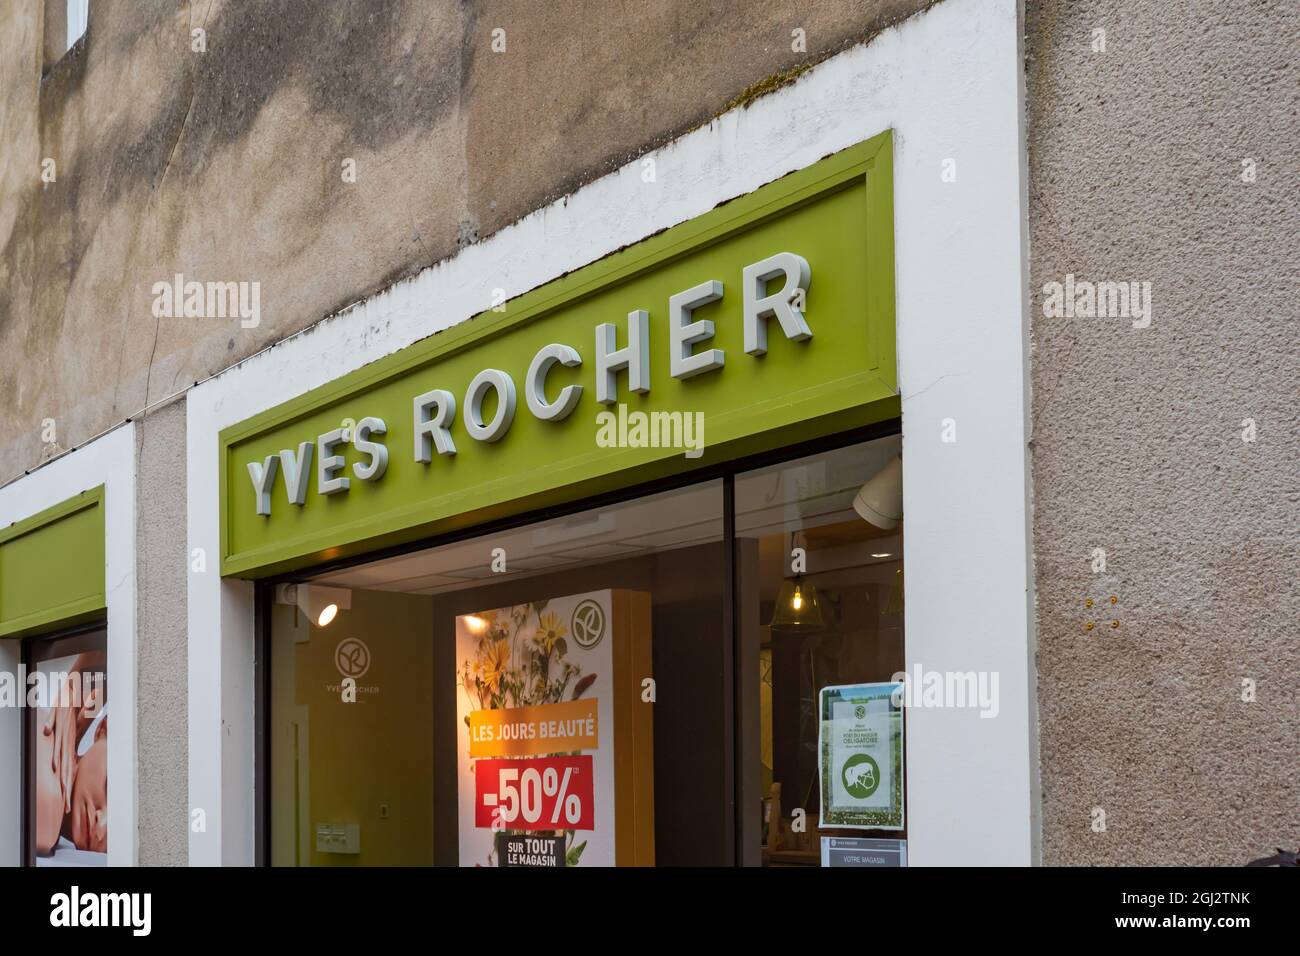 SABLE, FRANKREICH - 31. Jul 2021: Nahaufnahme einer berühmten Yves Rocher-Markenfassade mit Logo und Beschilderung Stockfoto